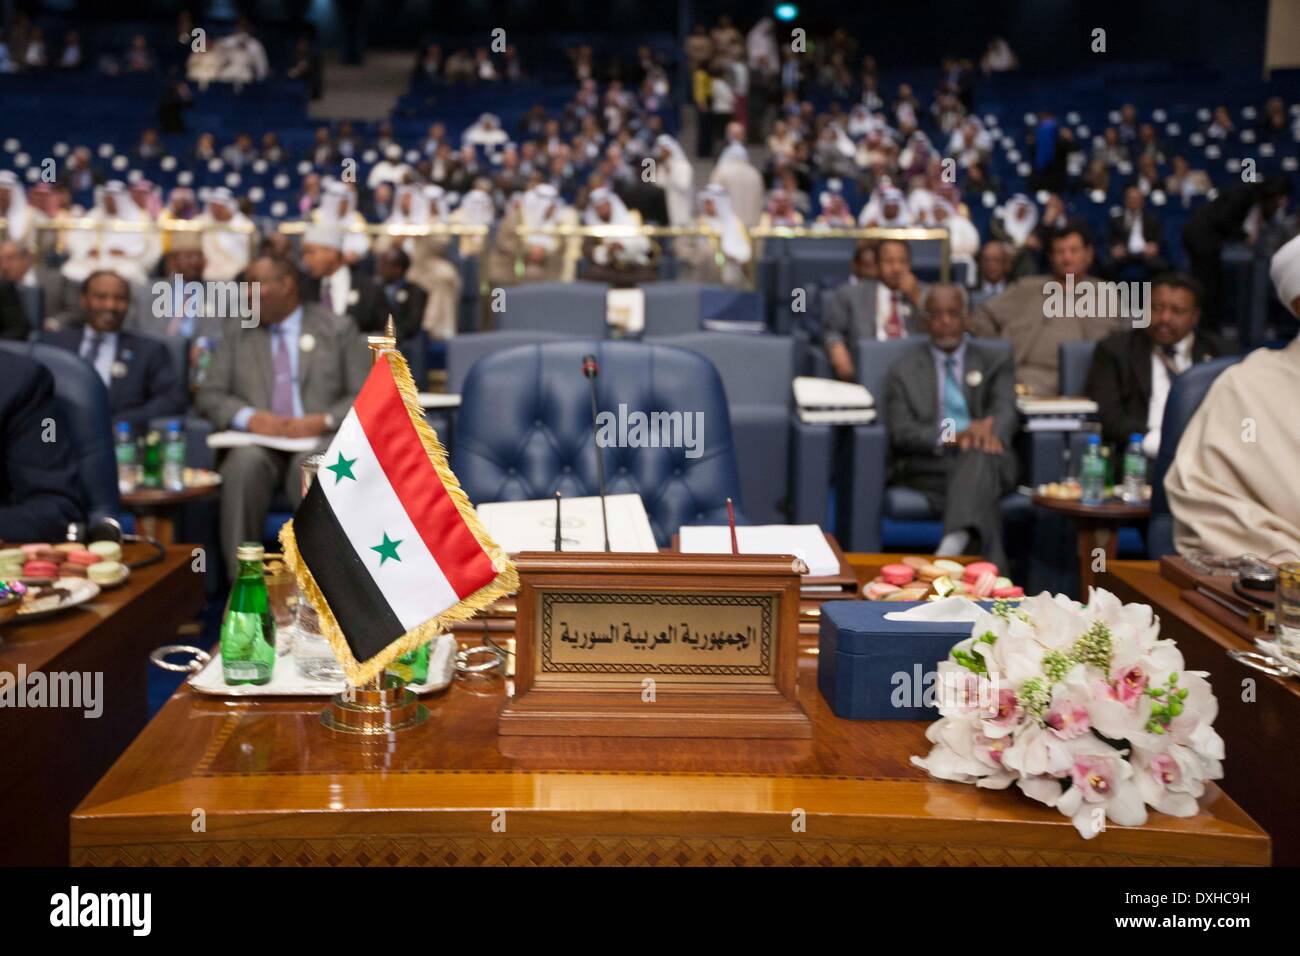 La ville de Koweït, Koweït. Mar 26, 2014. Photo prise le 26 mars 2014 présente le siège vide de la Syrie au cours de la cérémonie de clôture du 25e Sommet de la Ligue arabe dans la ville de Koweït, Koweït, le 26 mars 2014. Les dirigeants des États arabes a conclu les deux jours du sommet de la Ligue arabe avec l'annonce de Déclaration de Koweït le mercredi à Bayan Palace au Koweït. Credit : Cui Xinyu/Xinhua/Alamy Live News Banque D'Images